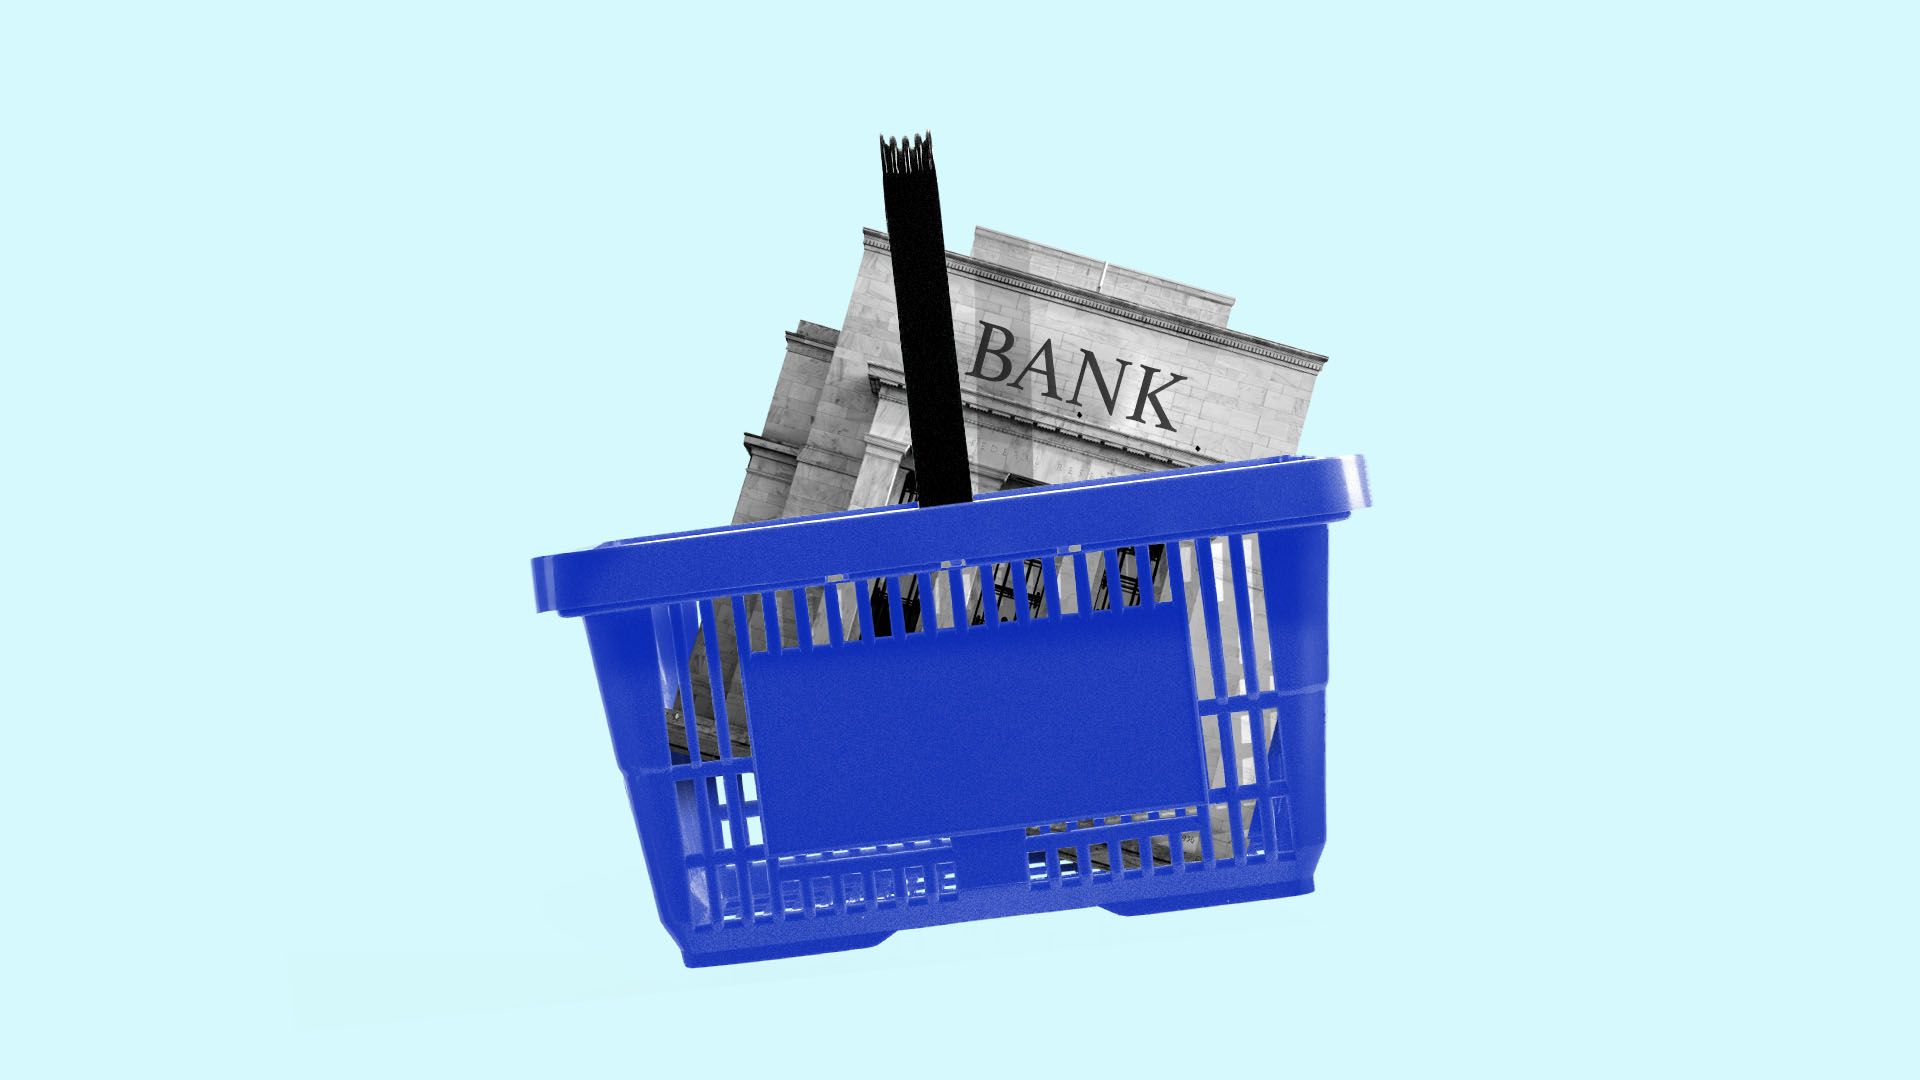 llustration of a supermarket basket with a bank inside